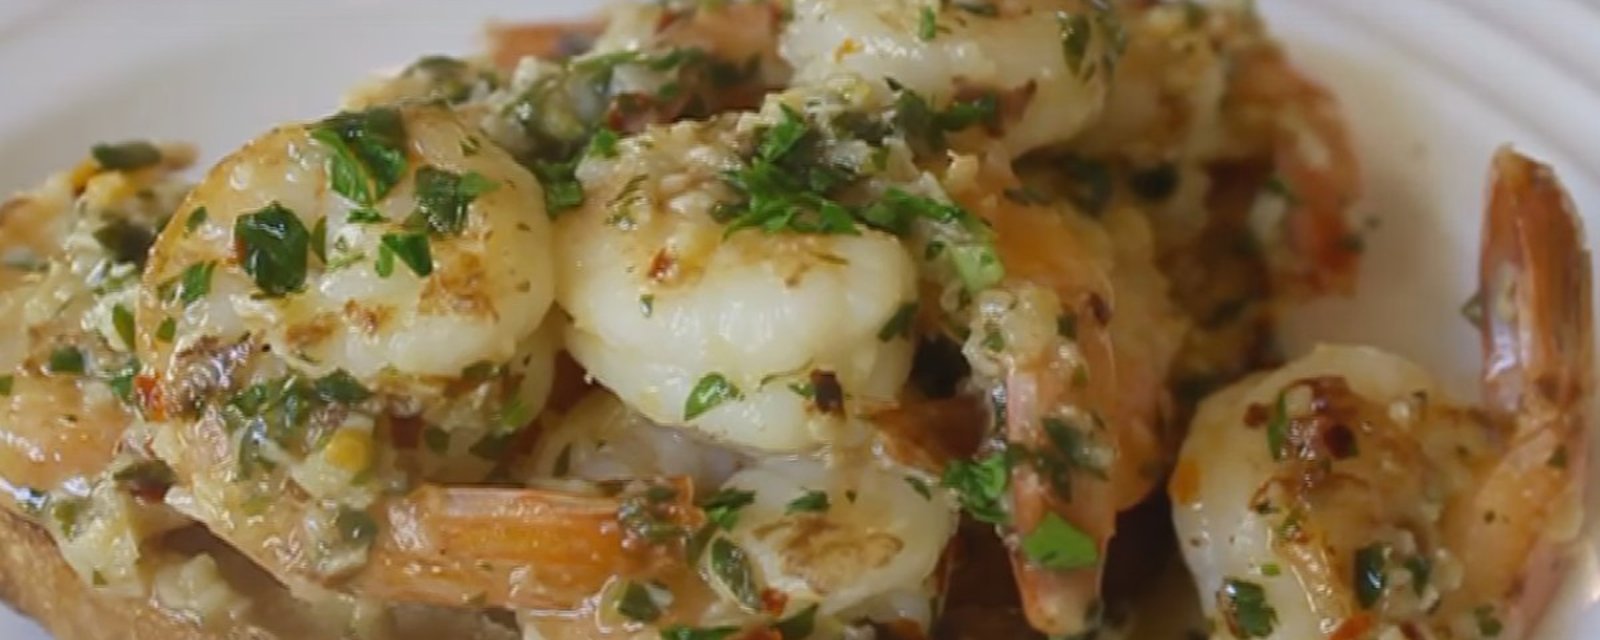 Ces crevettes à l'ail se cuisinent avec une cuillère à soupe de saumure de câpres qui change tout!